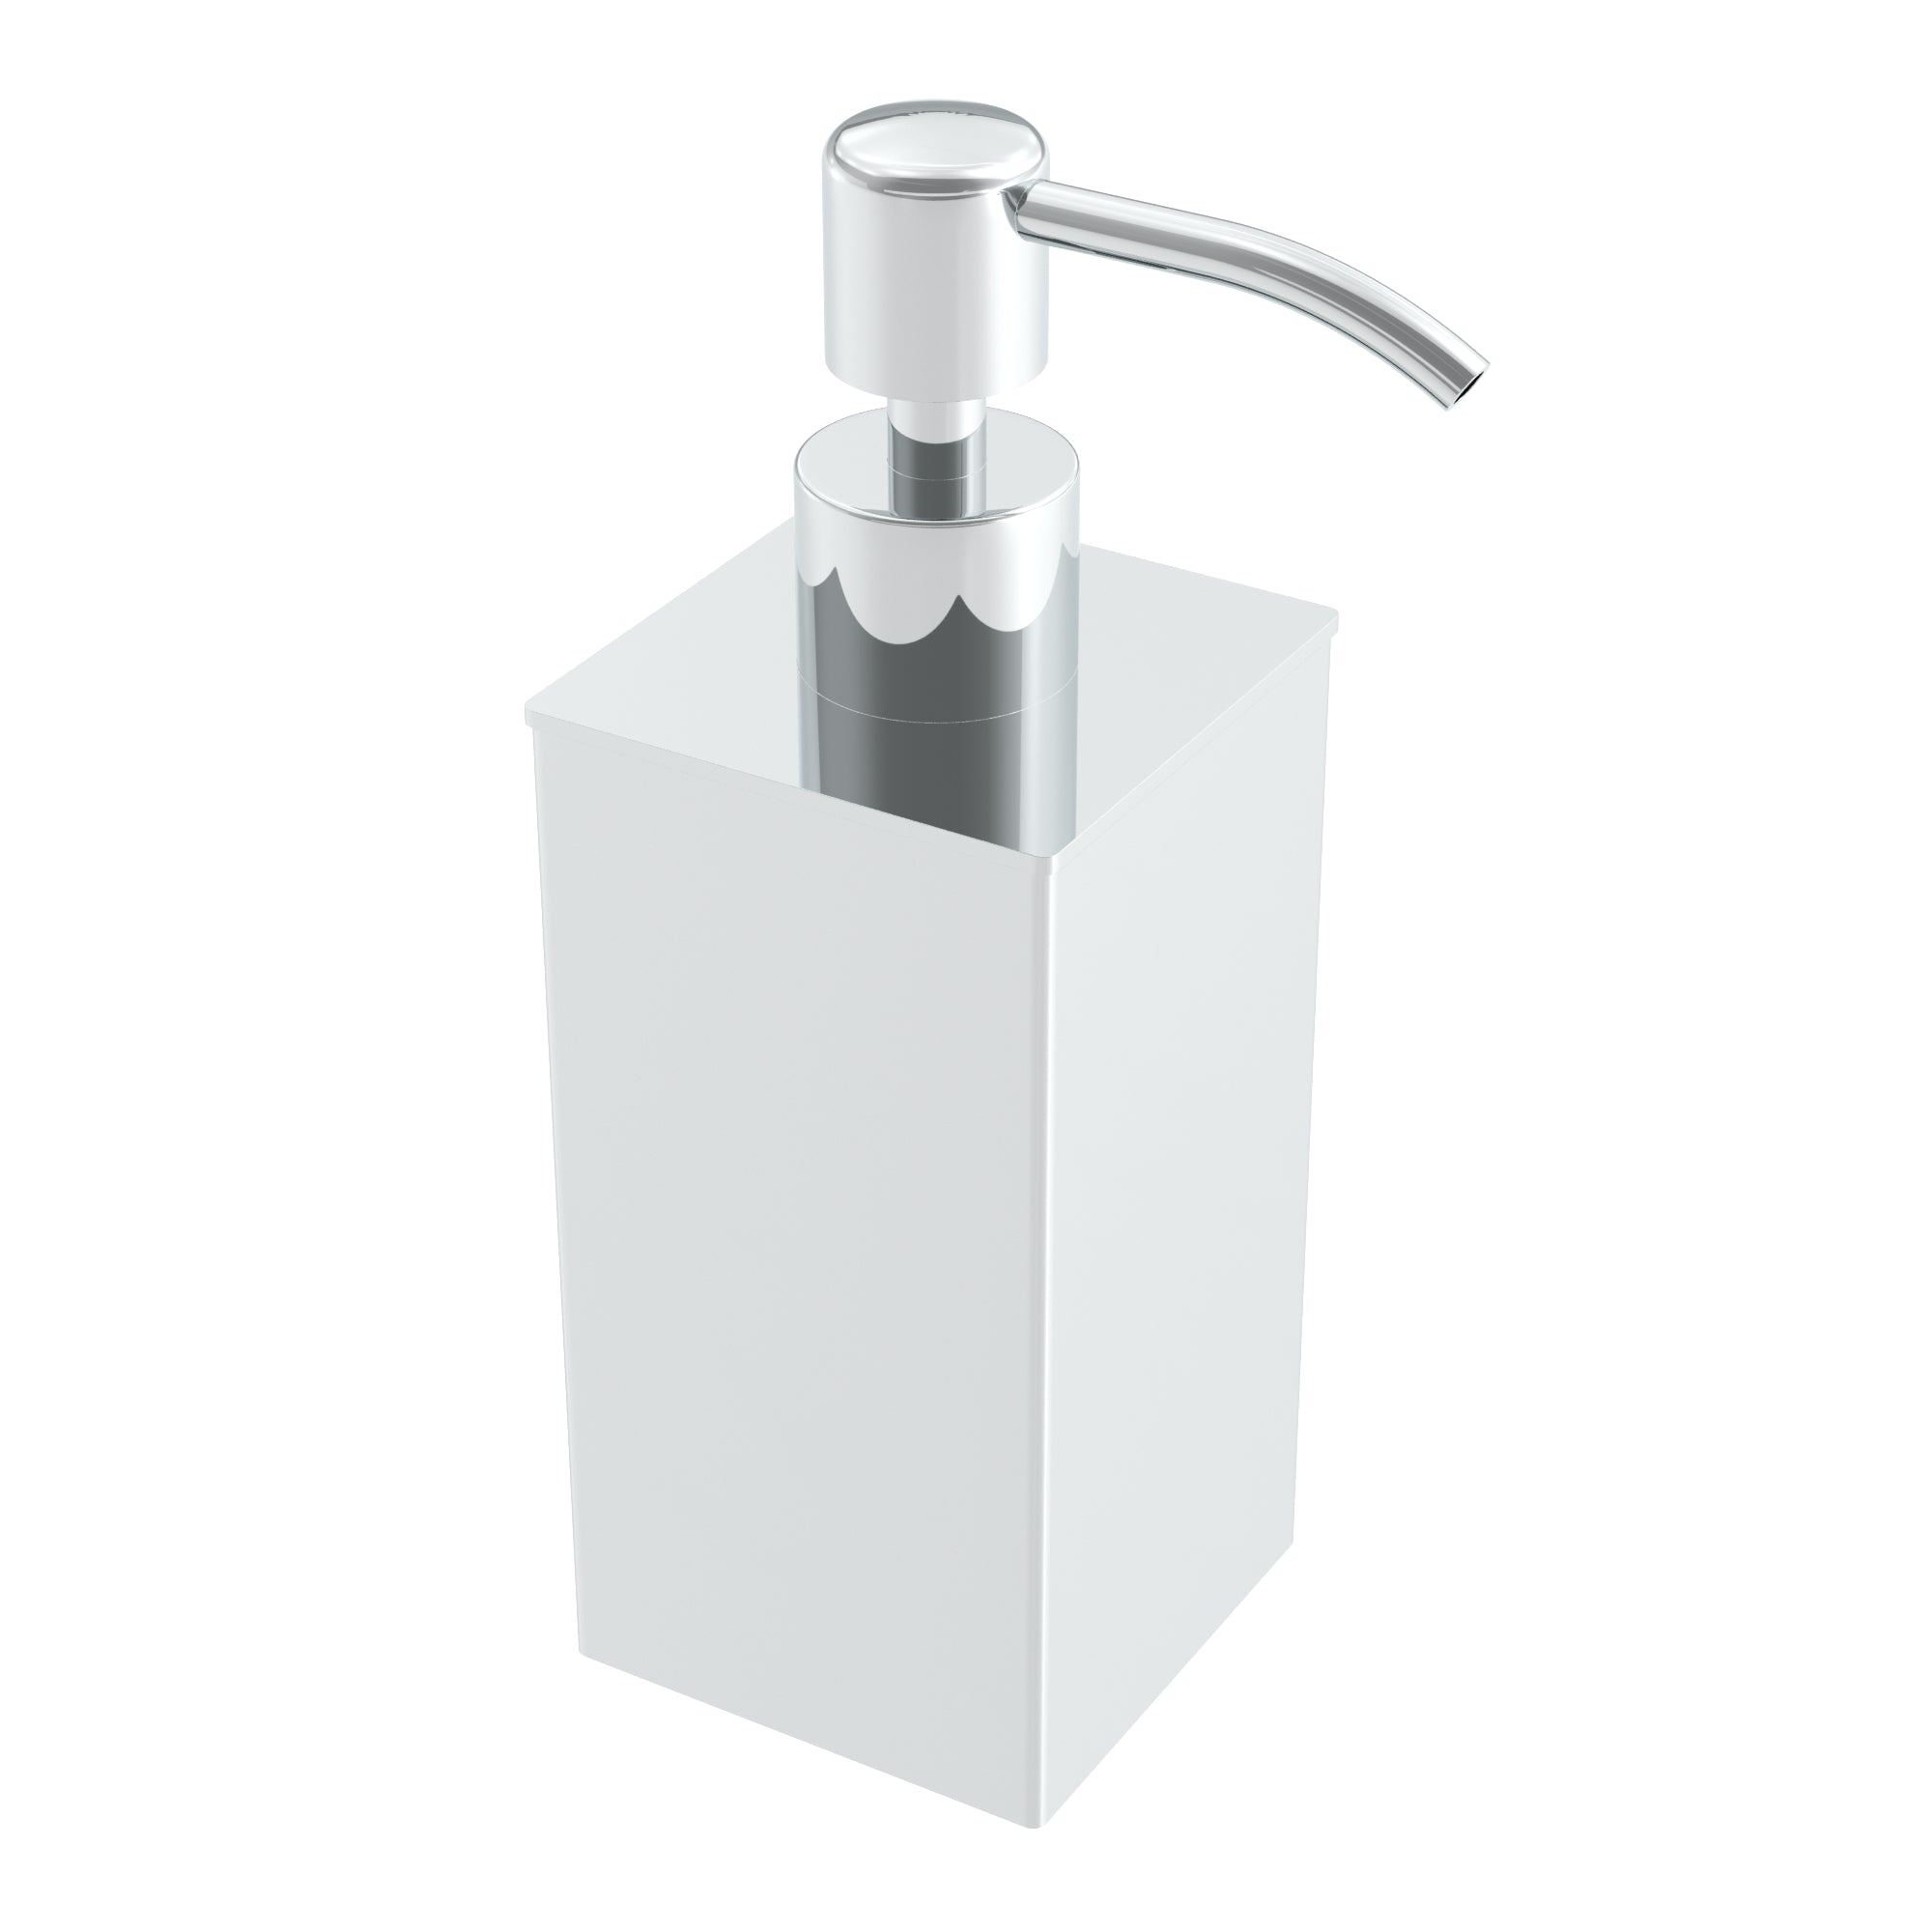 Freestanding 220ml Soap Dispenser